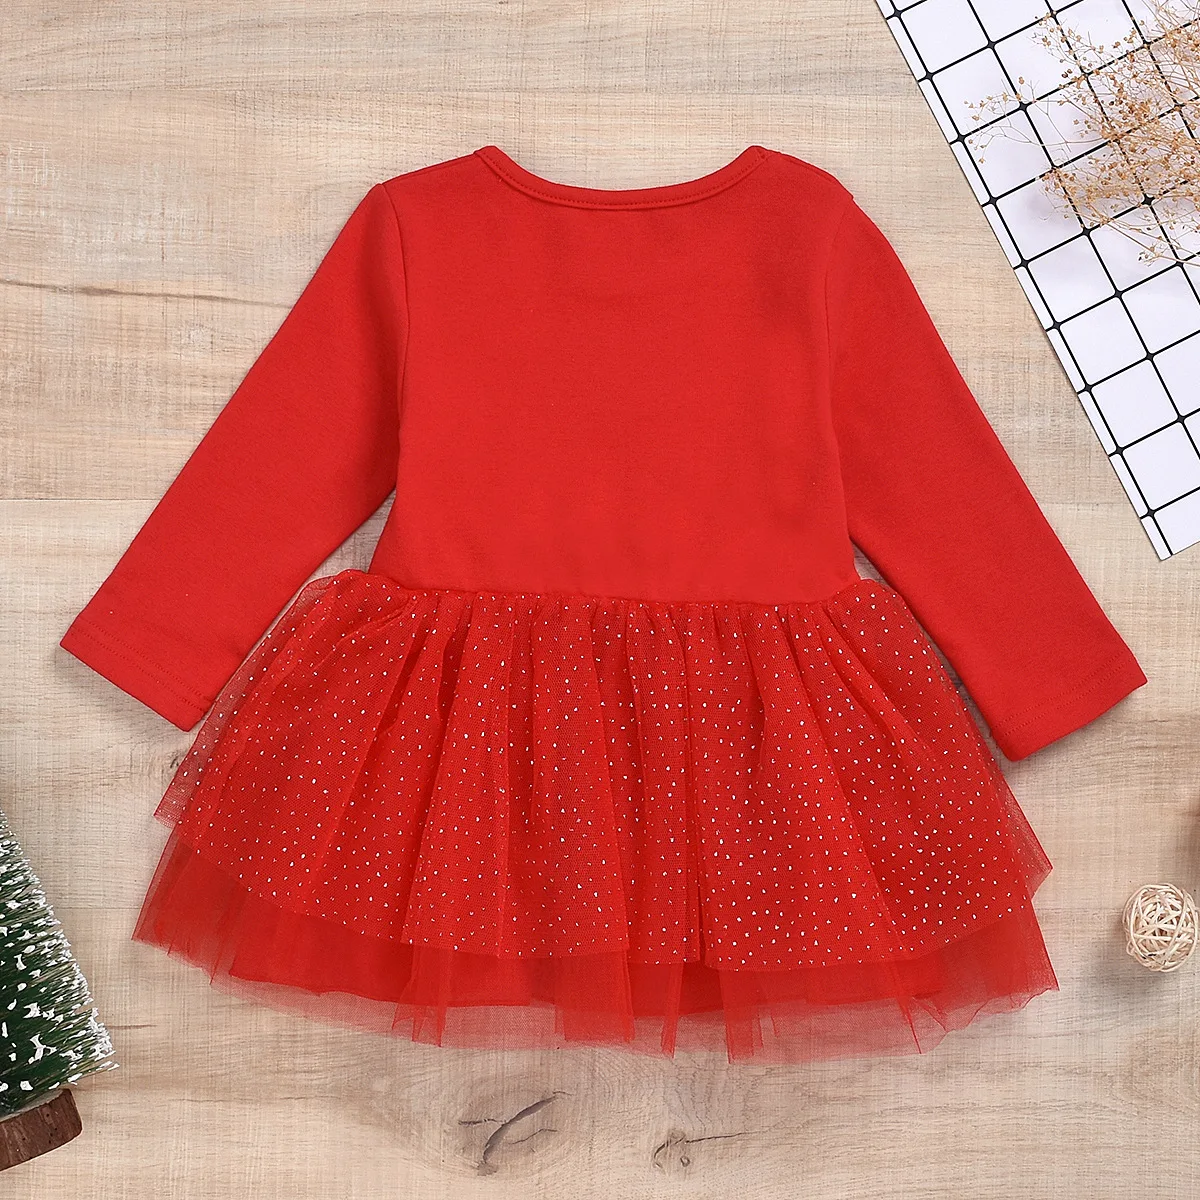 WEPBEL/рождественское кружевное платье-пачка для маленьких девочек 12 мес.-4 лет, комплект одежды принцессы